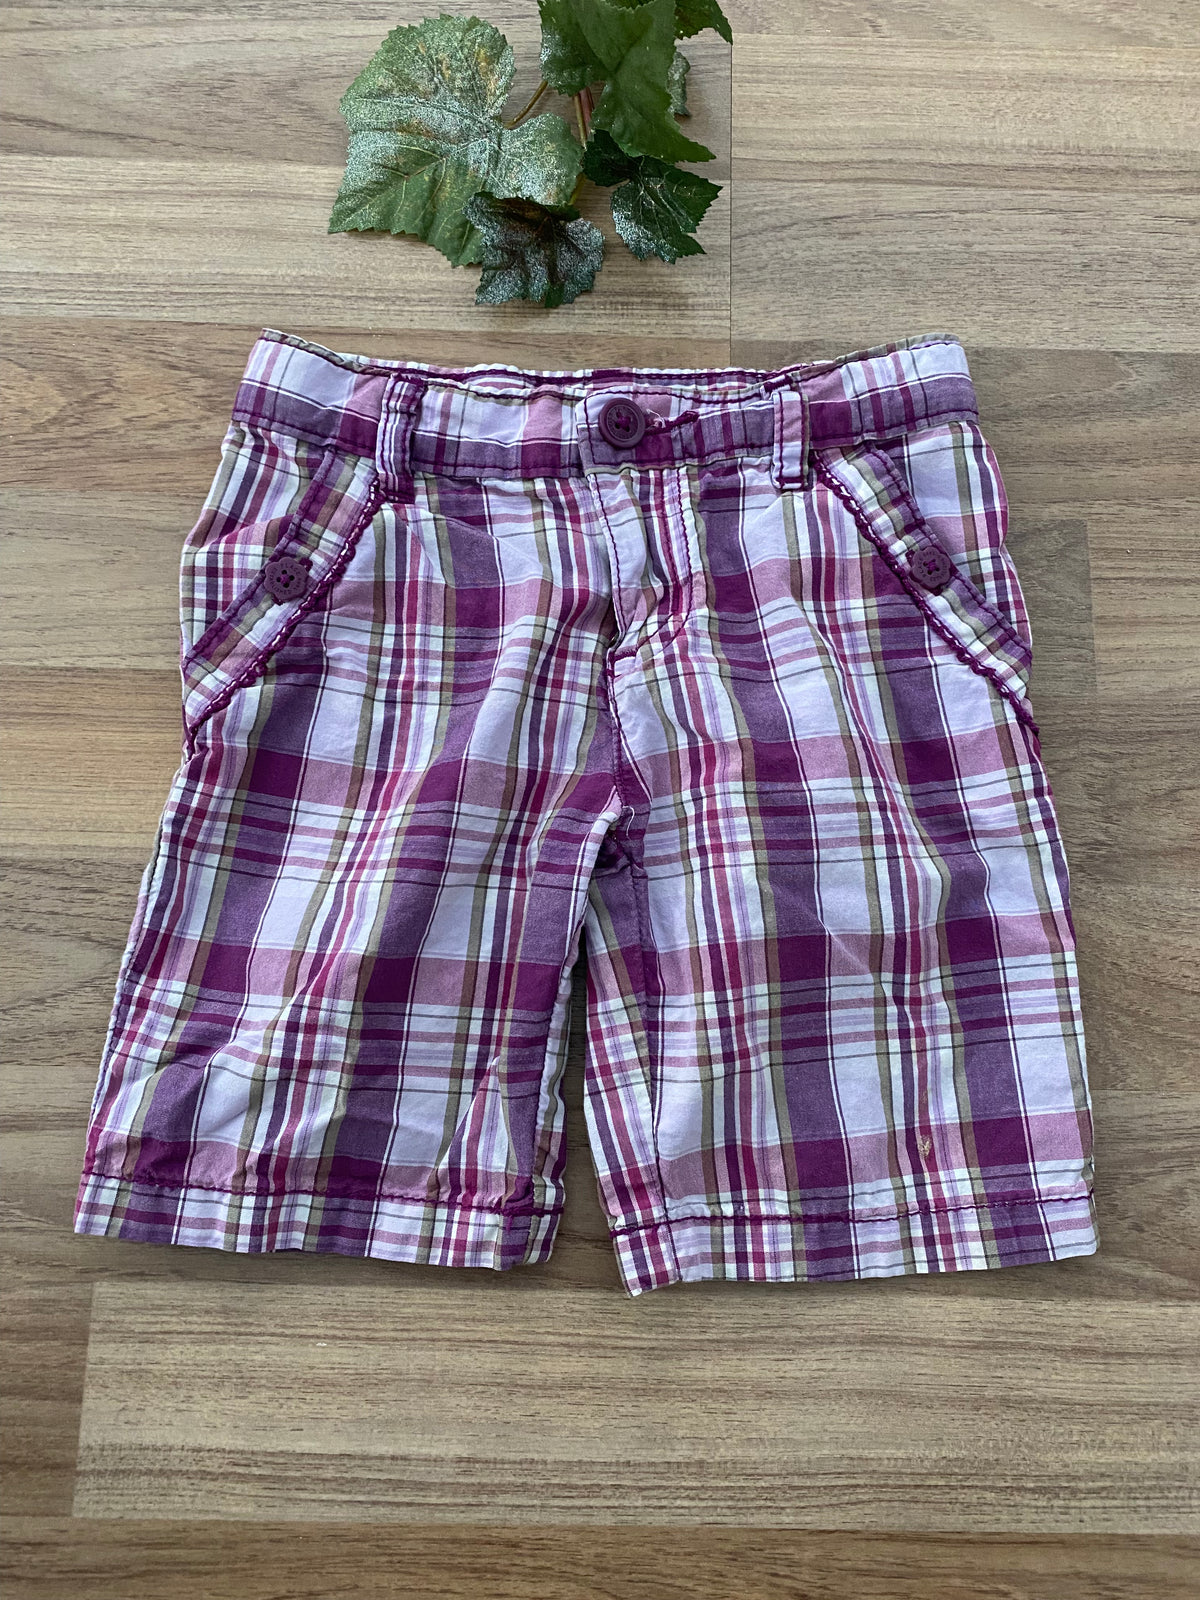 Shorts (Girls Size 4)